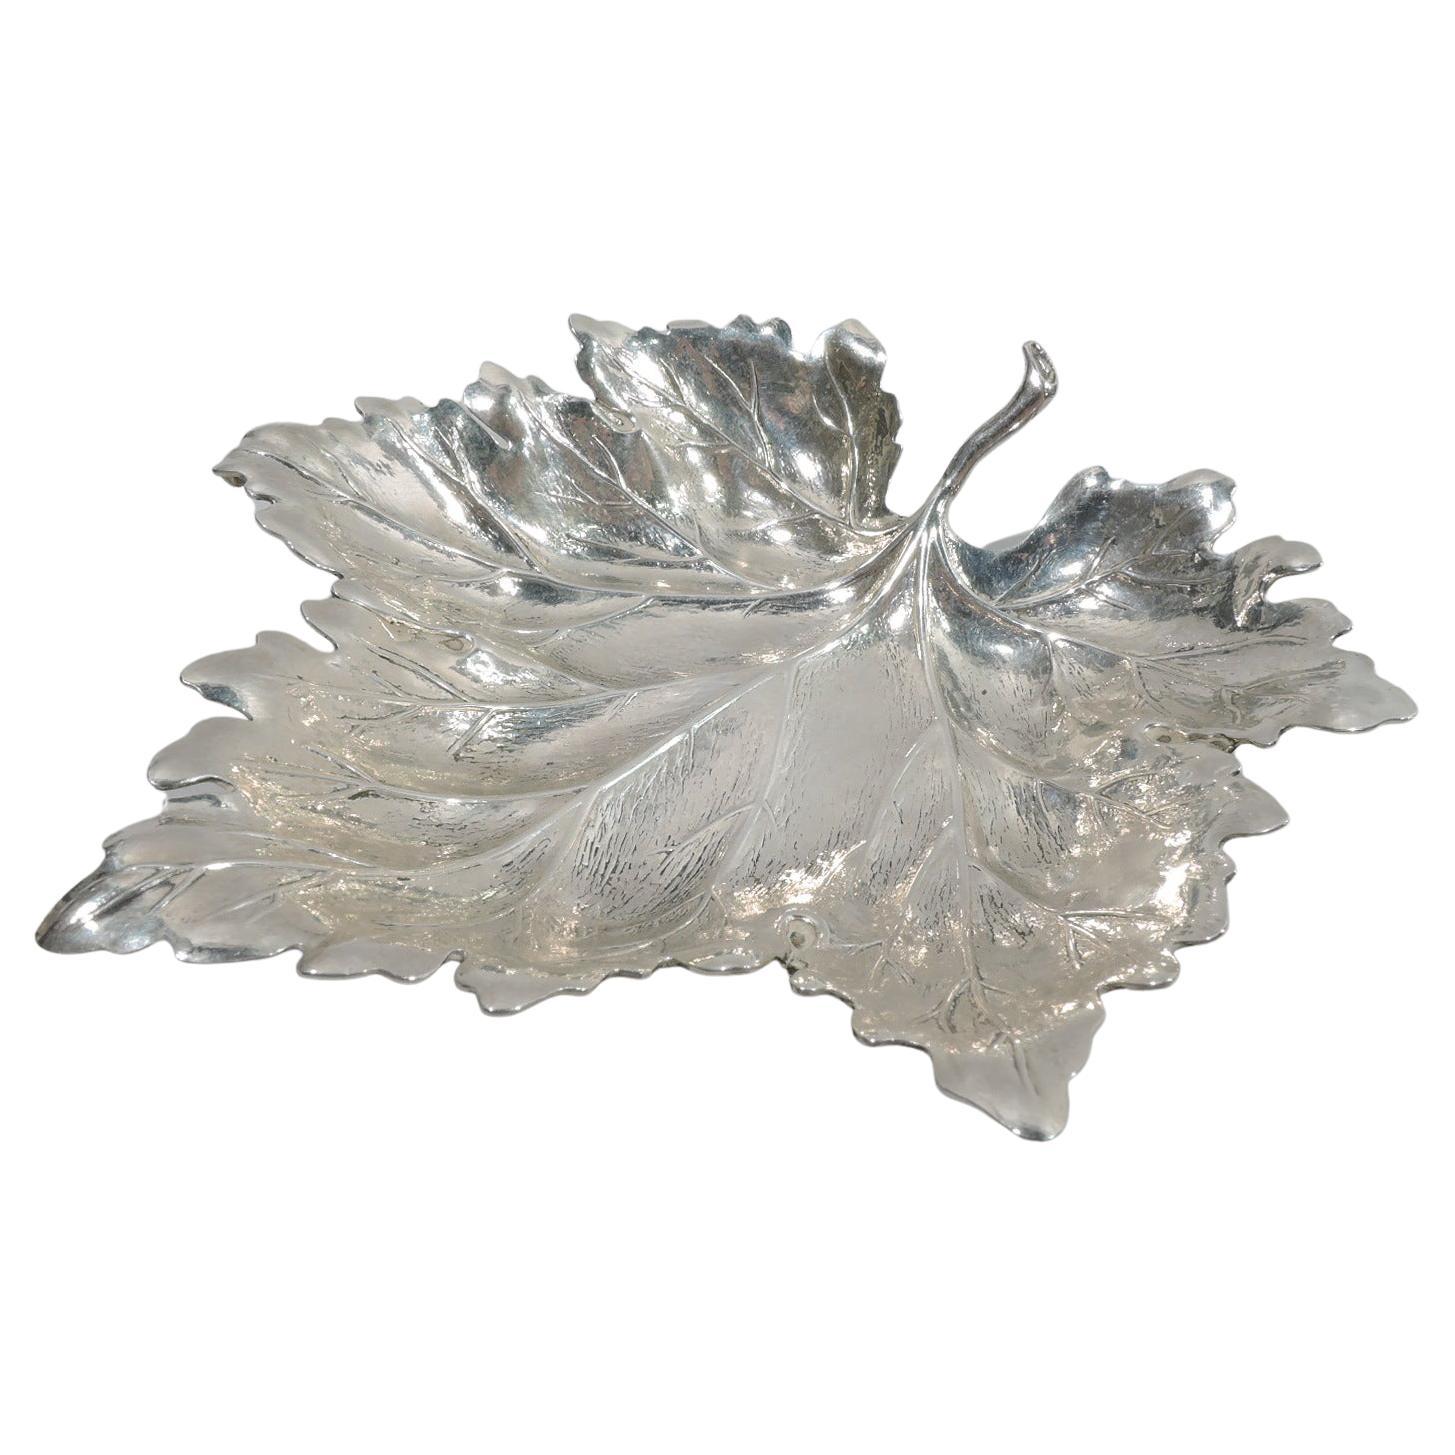 Stylish Sterling Silver Leaf Dish by Buccellati